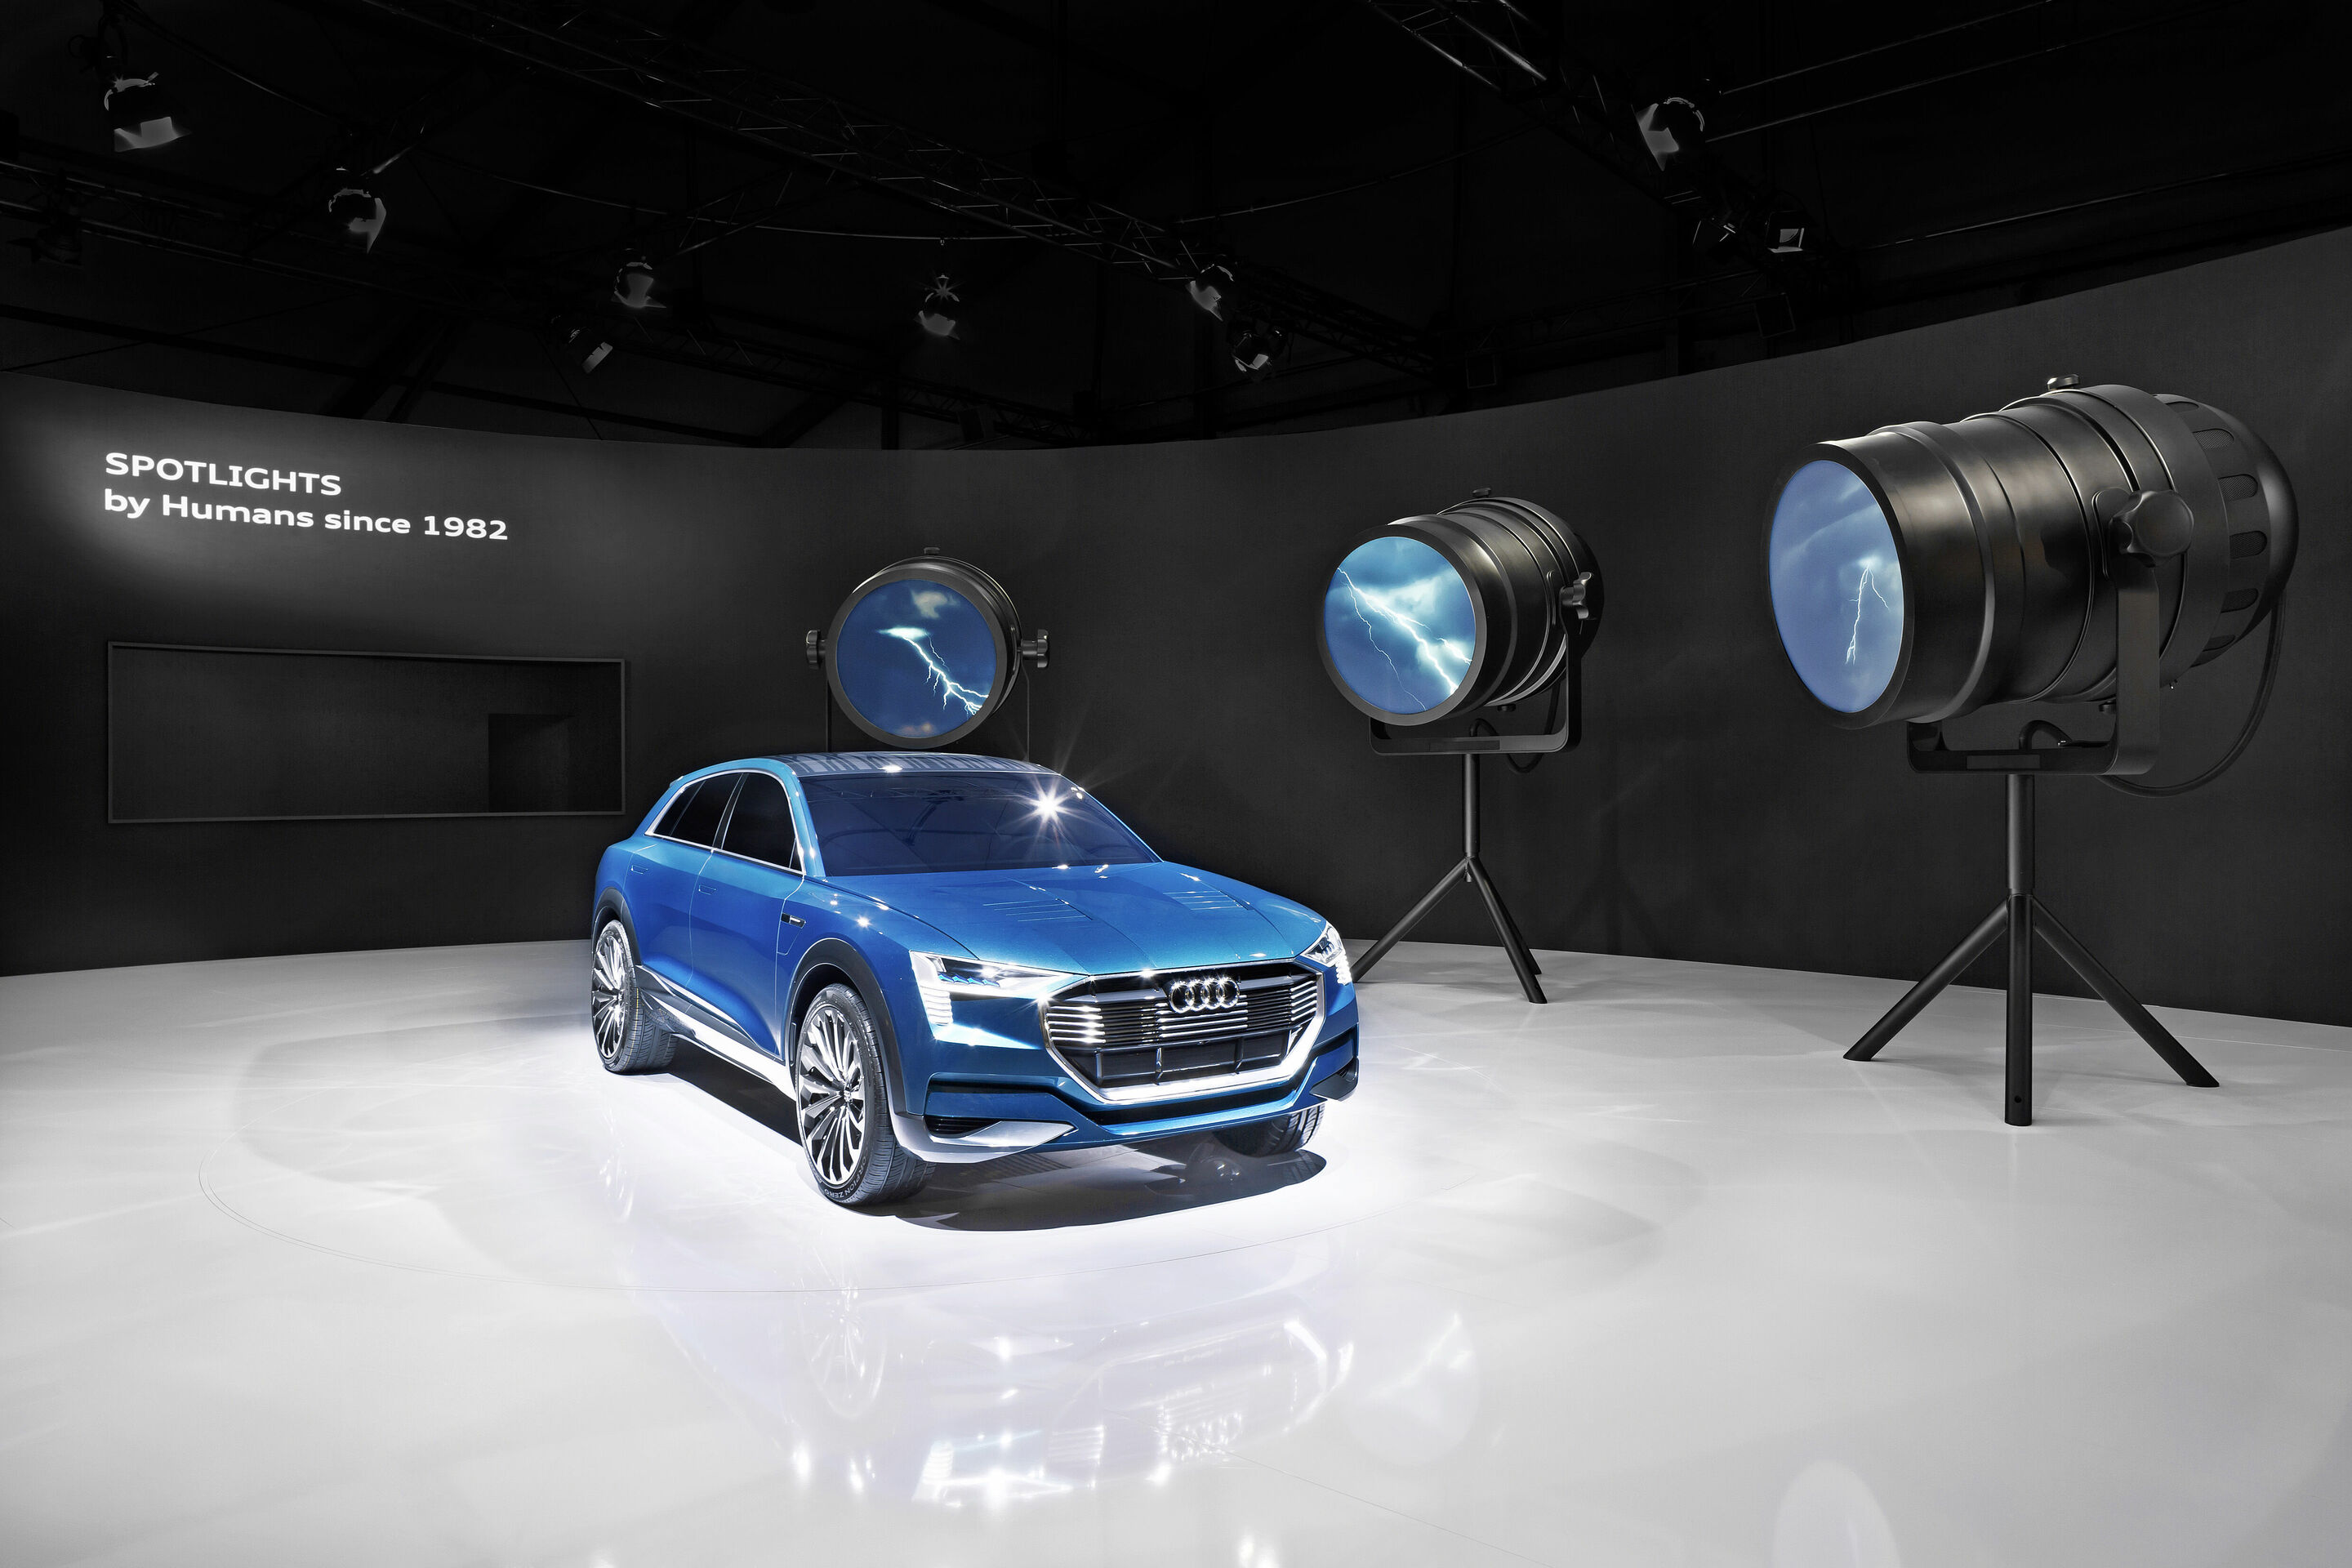 Audi at Design Miami: Into an Electric Future